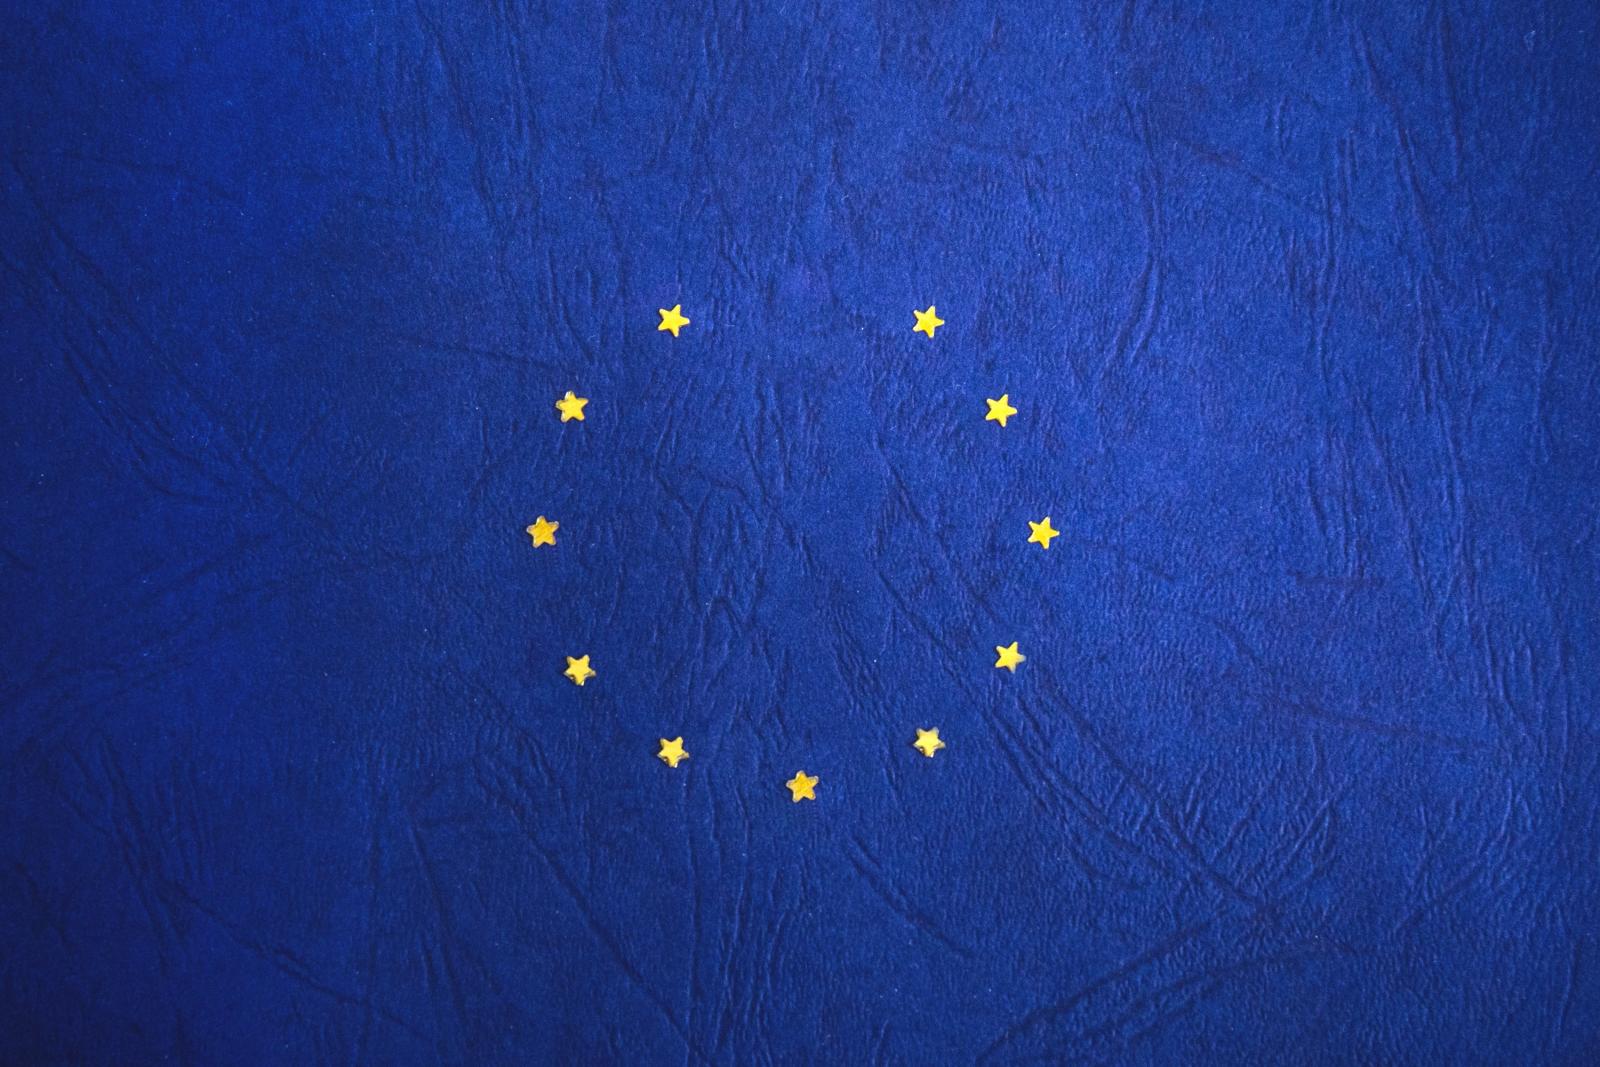 EU flag missing a star. Photo credit: Pexels